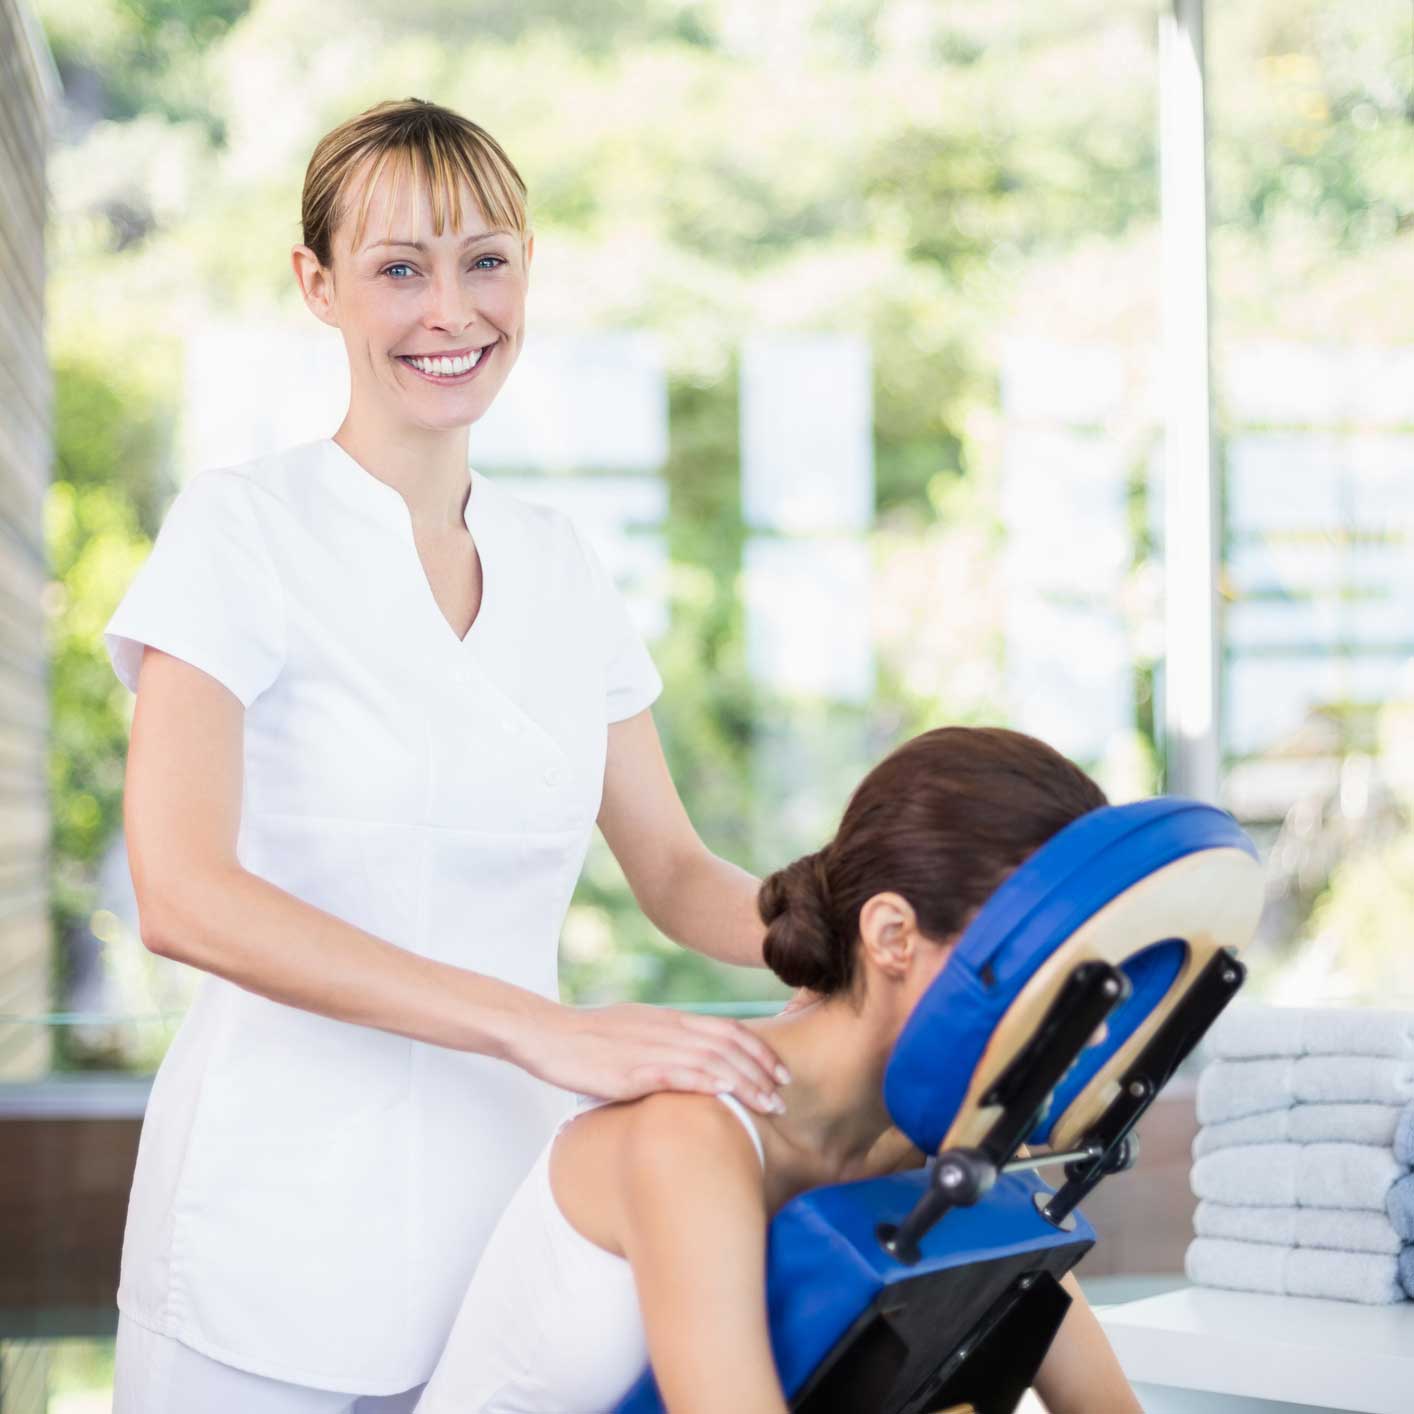 massage therapist massaging client in massage chair